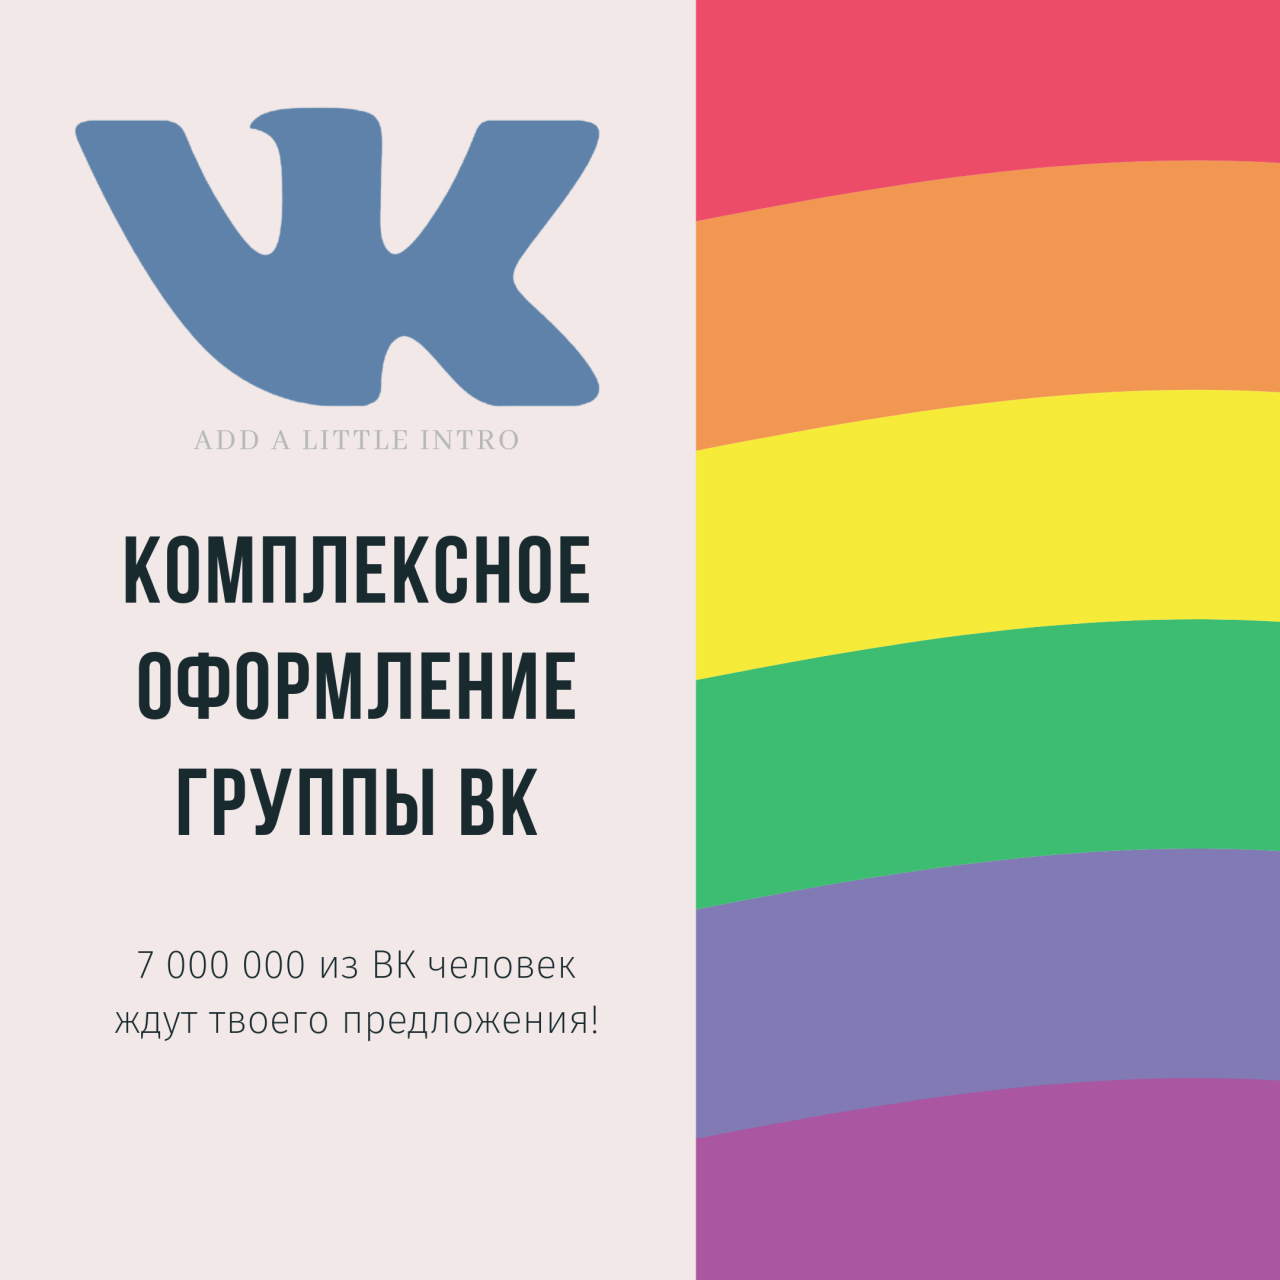 Оформление группы ВКонтакте из категории Дизайн для CMS OpenCart (ОпенКарт)